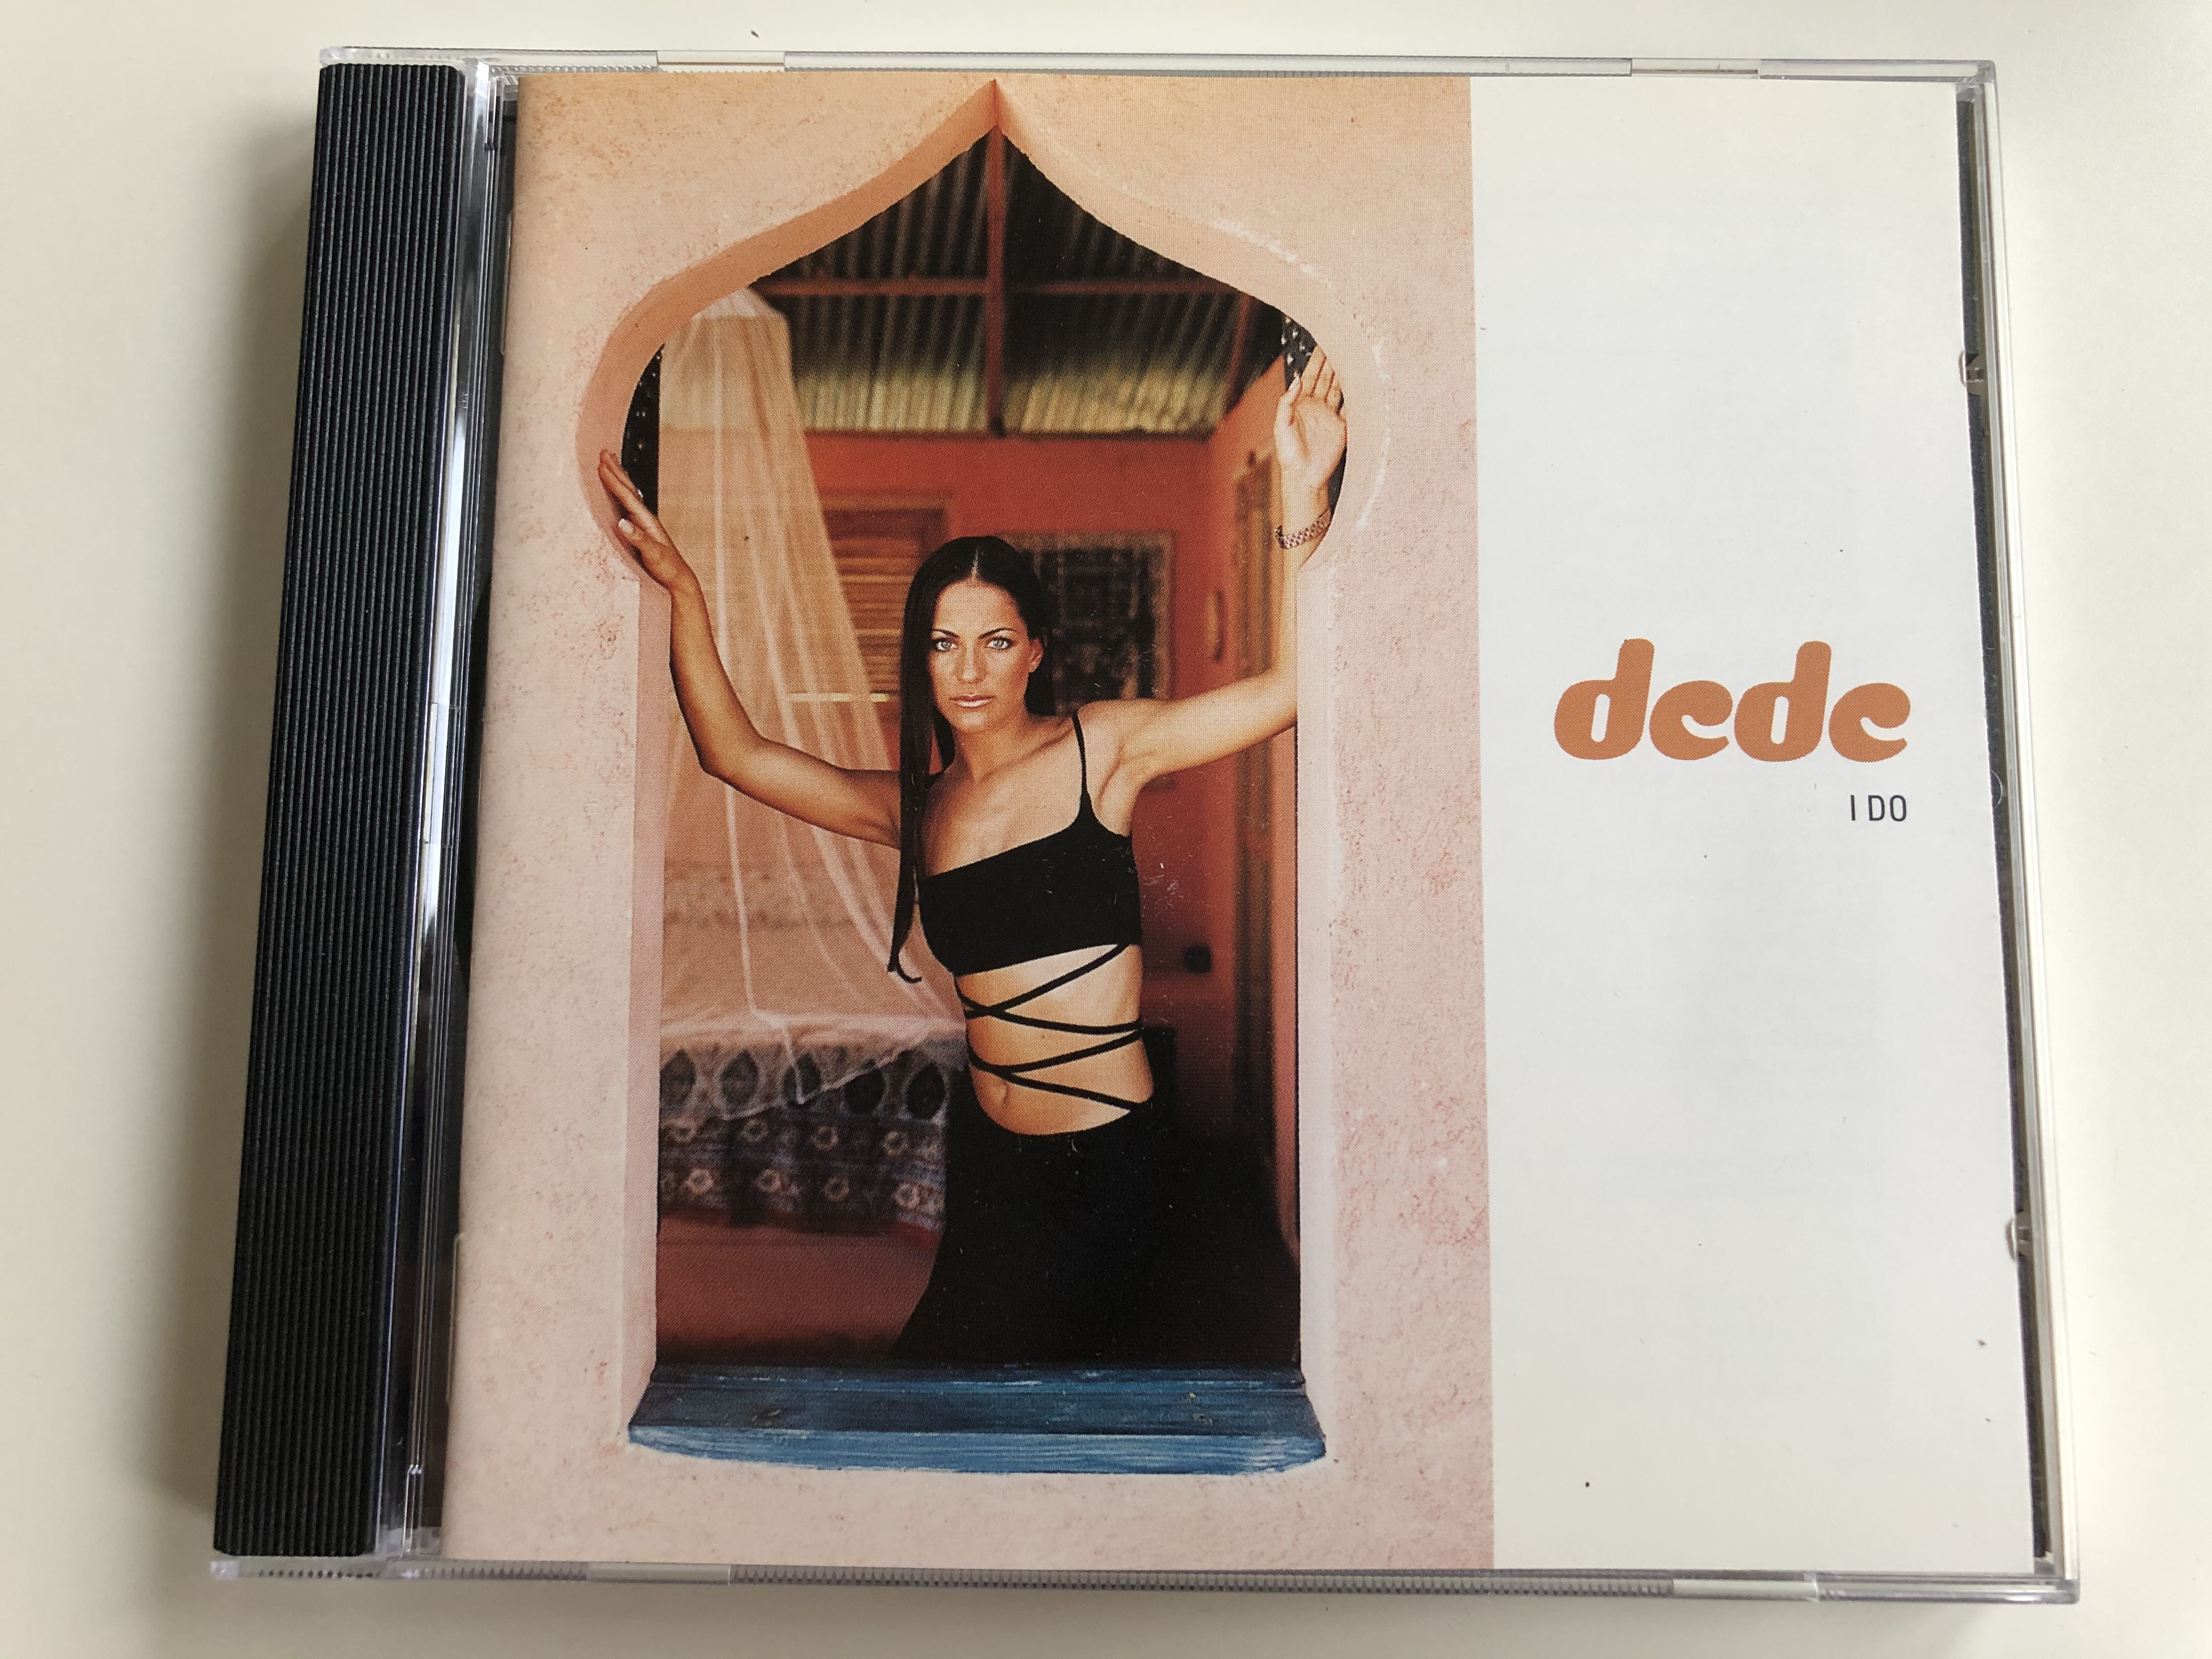 dede-i-do-columbia-audio-cd-1997-col-487356-2-1-.jpg